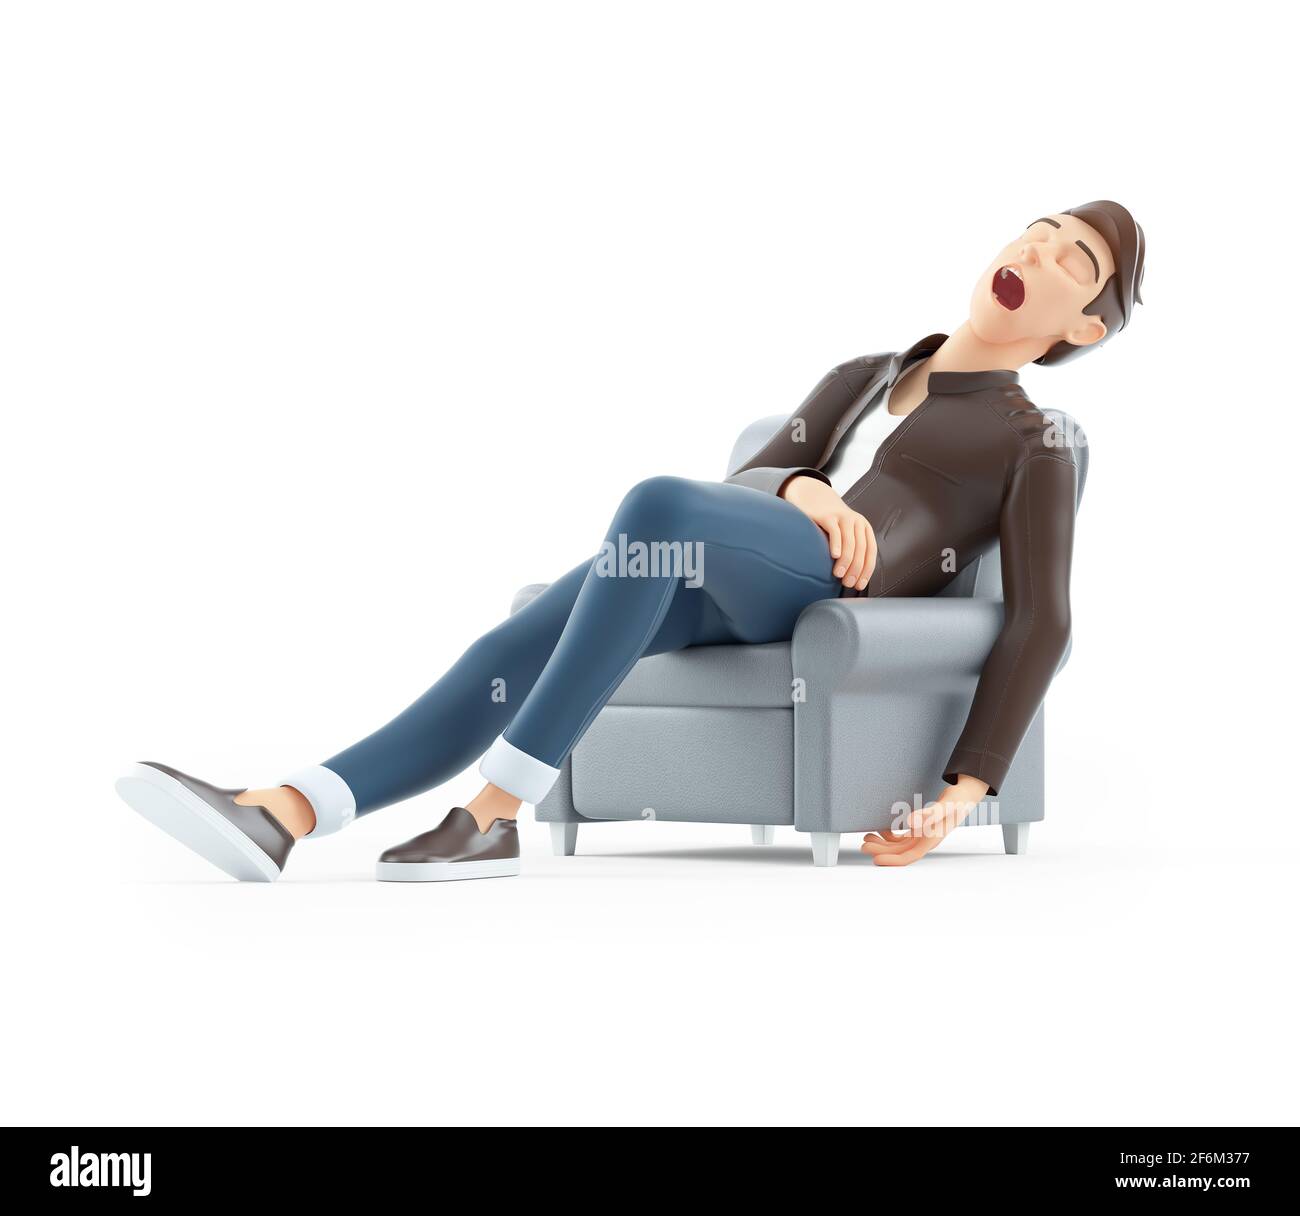 3d cartoon uomo addormentato in poltrona, illustrazione isolata su sfondo  bianco Foto stock - Alamy